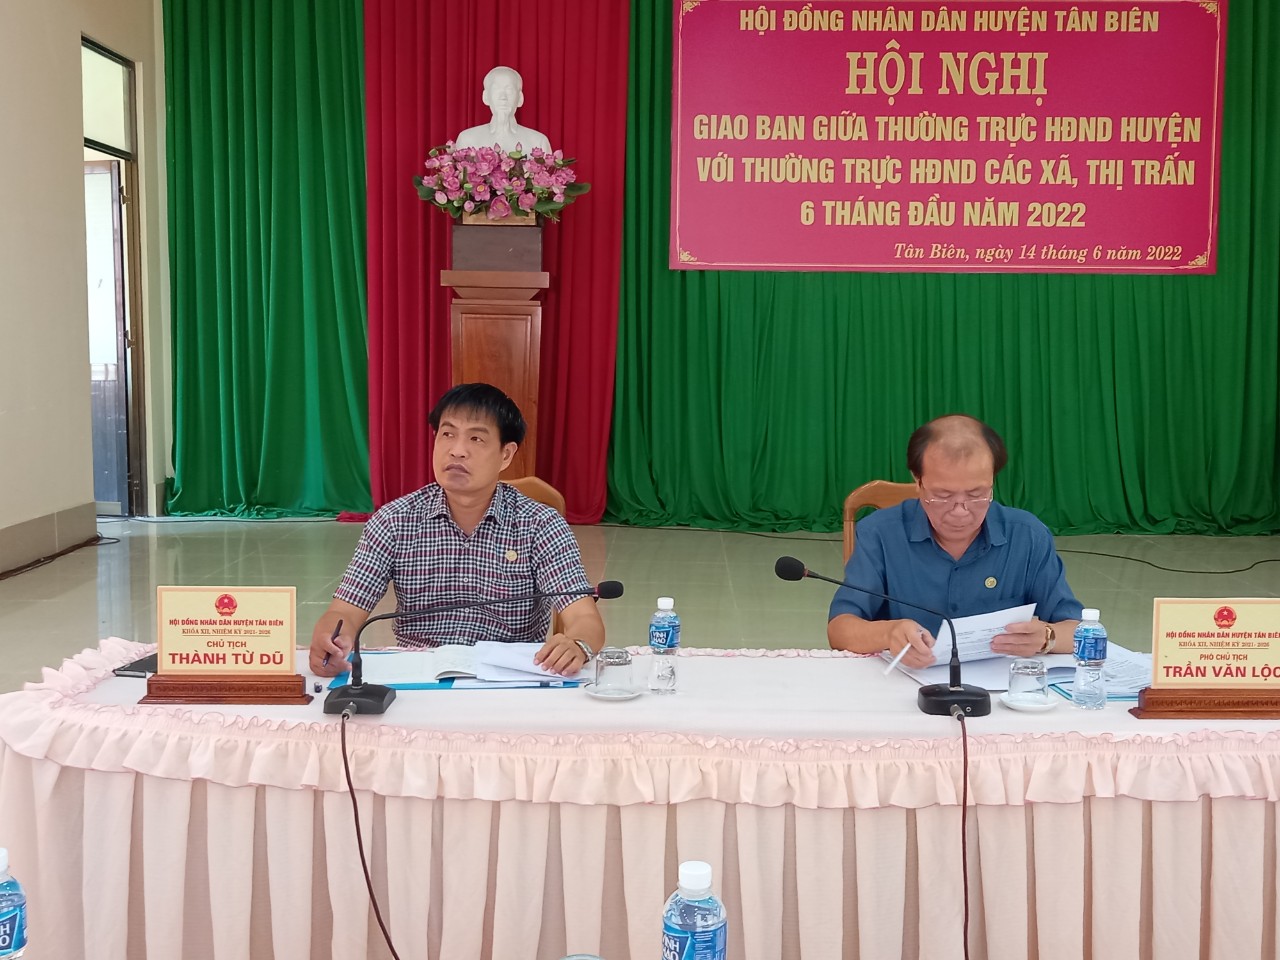 Thường trực Hội đồng nhân dân huyện Tân Biên tổ chức hội nghị giao ban với Thường trực HĐND xã, thị trấn 6 tháng đầu năm 2022